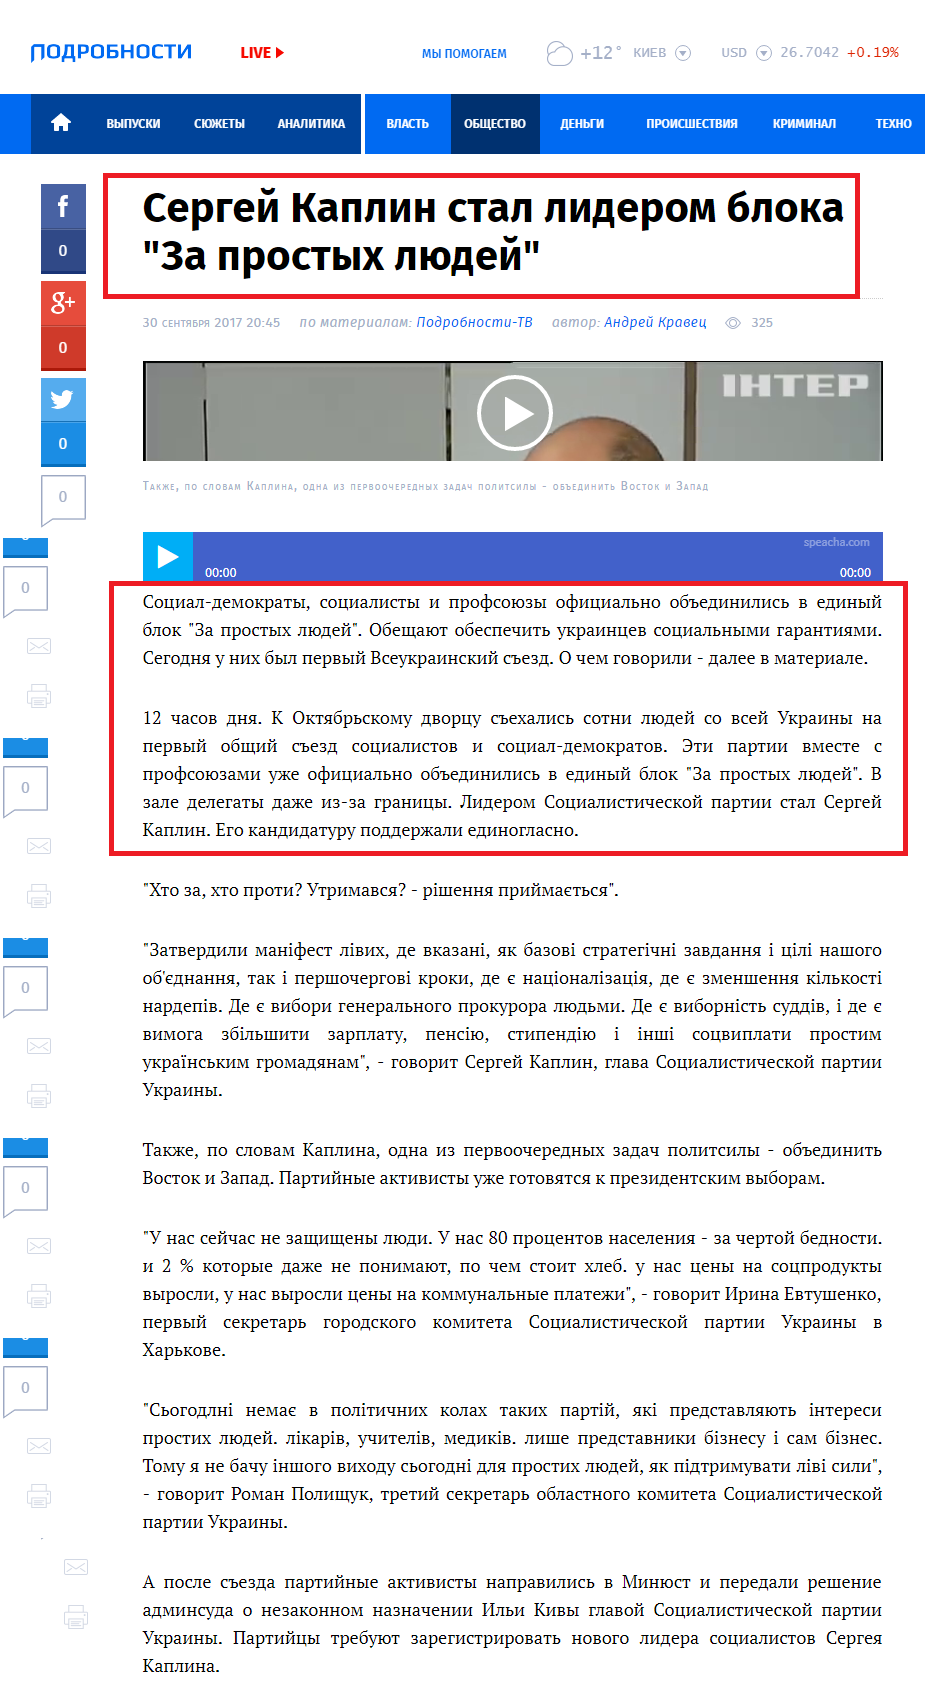 http://podrobnosti.ua/2202040-sergej-kaplin-stal-liderom-bloka-za-prostyh-ljudej.html